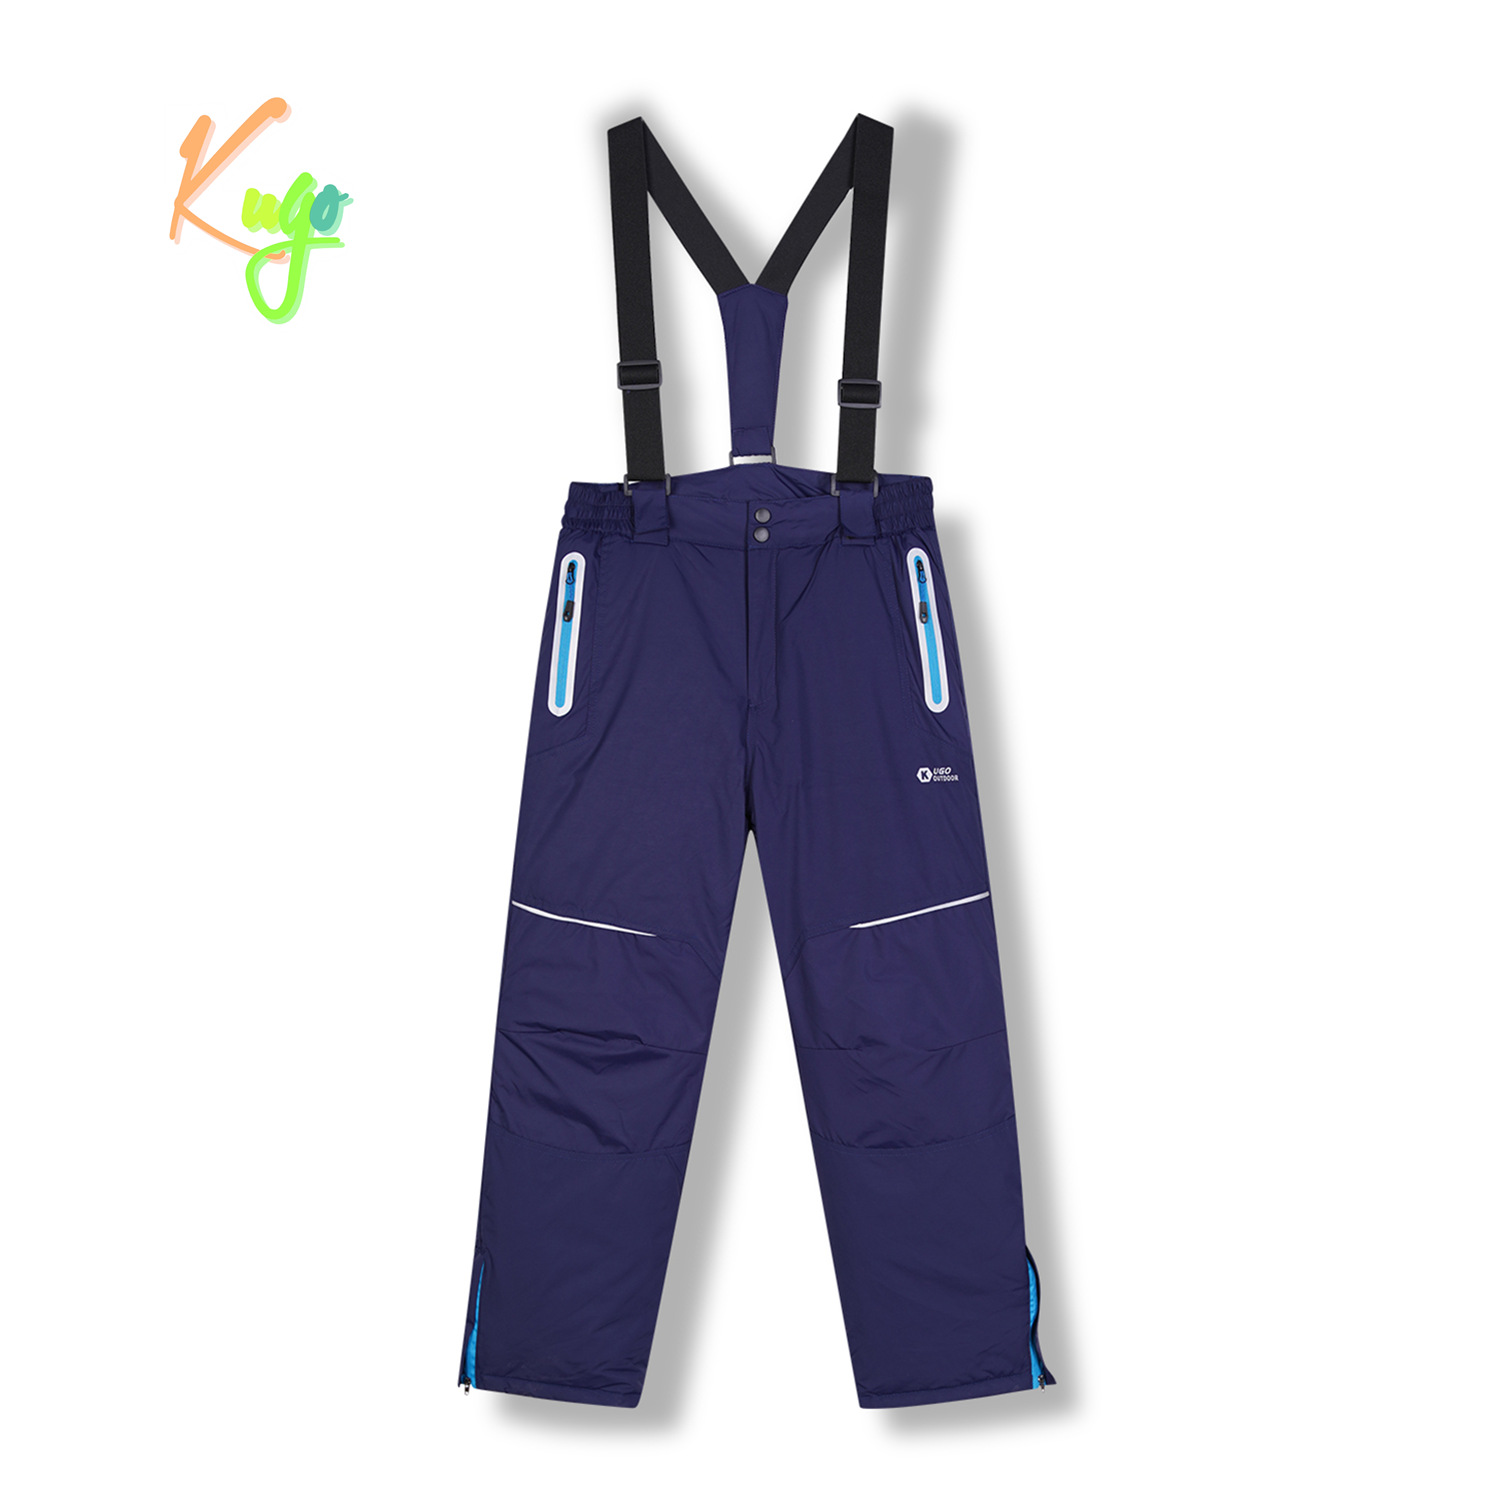 Chlapecké lyžařské kalhoty - KUGO DK8231, tmavě modrá Barva: Modrá tmavě, Velikost: 134